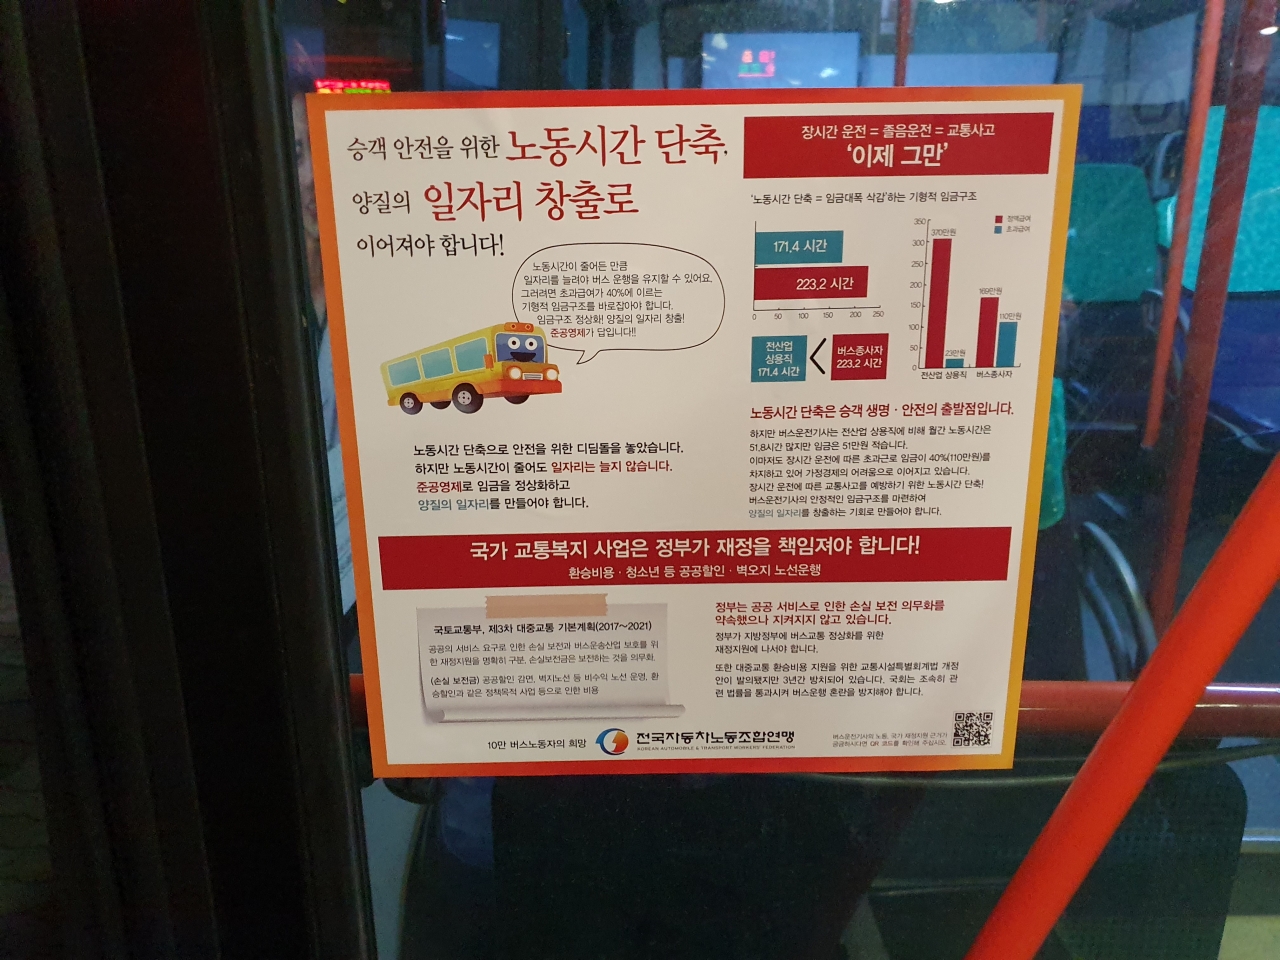 경기도 시내버스에 붙어 있는 포스터. ​사진 | 성대신문 webmaster@